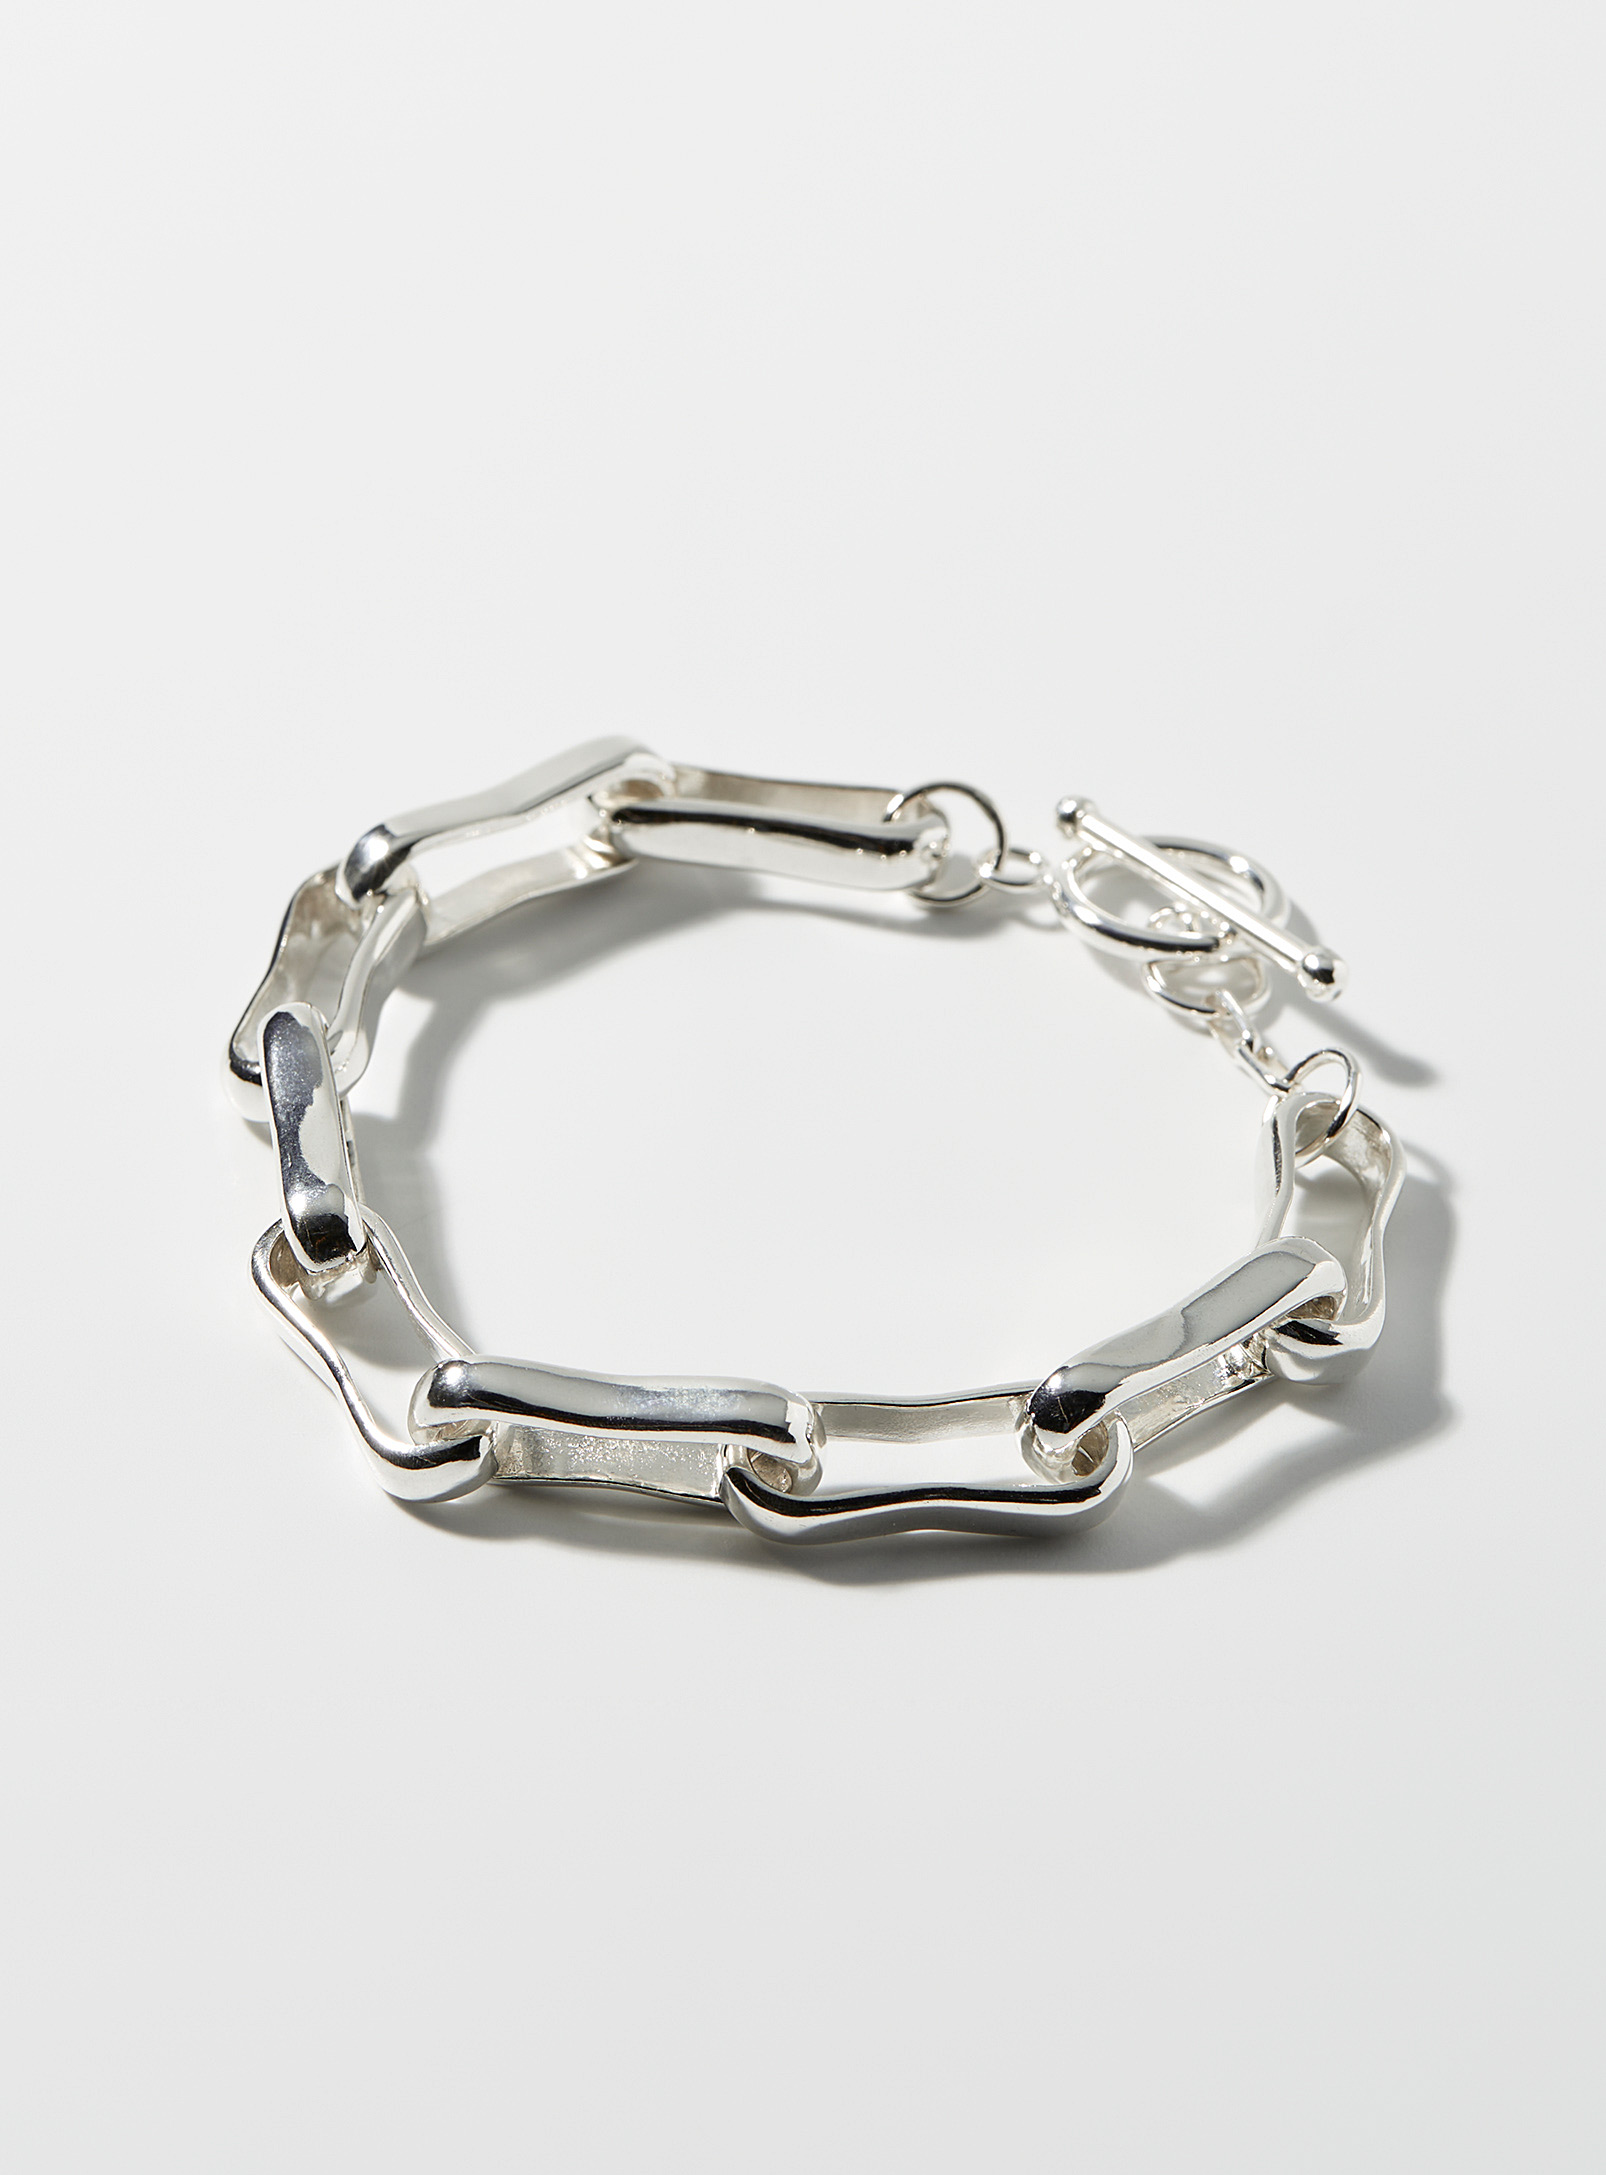 Paul Edward - Men's Oval sterling silver bracelet